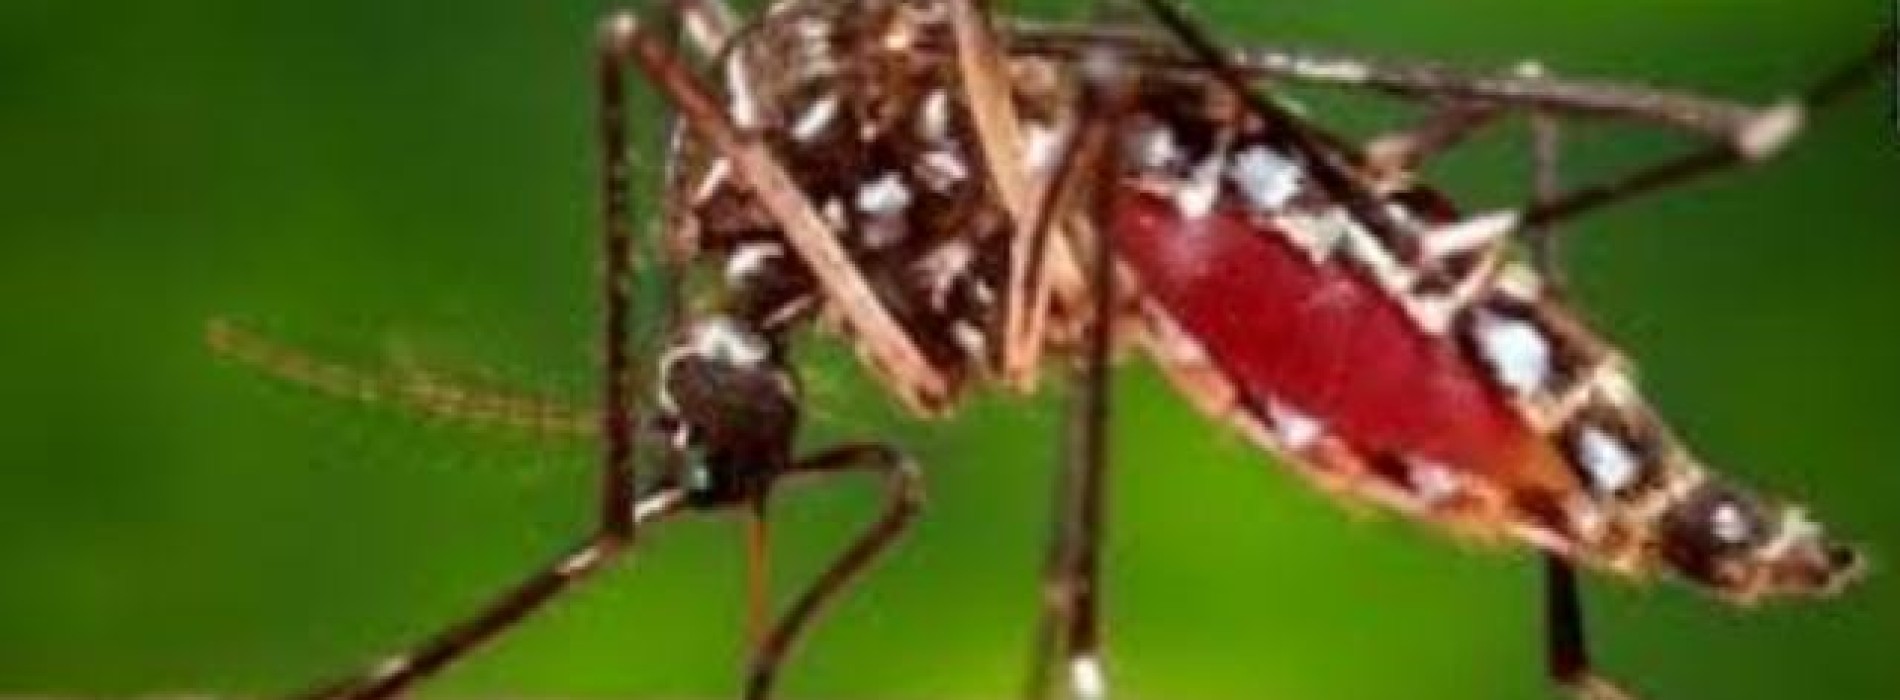 Zika virus set to spread across Americas